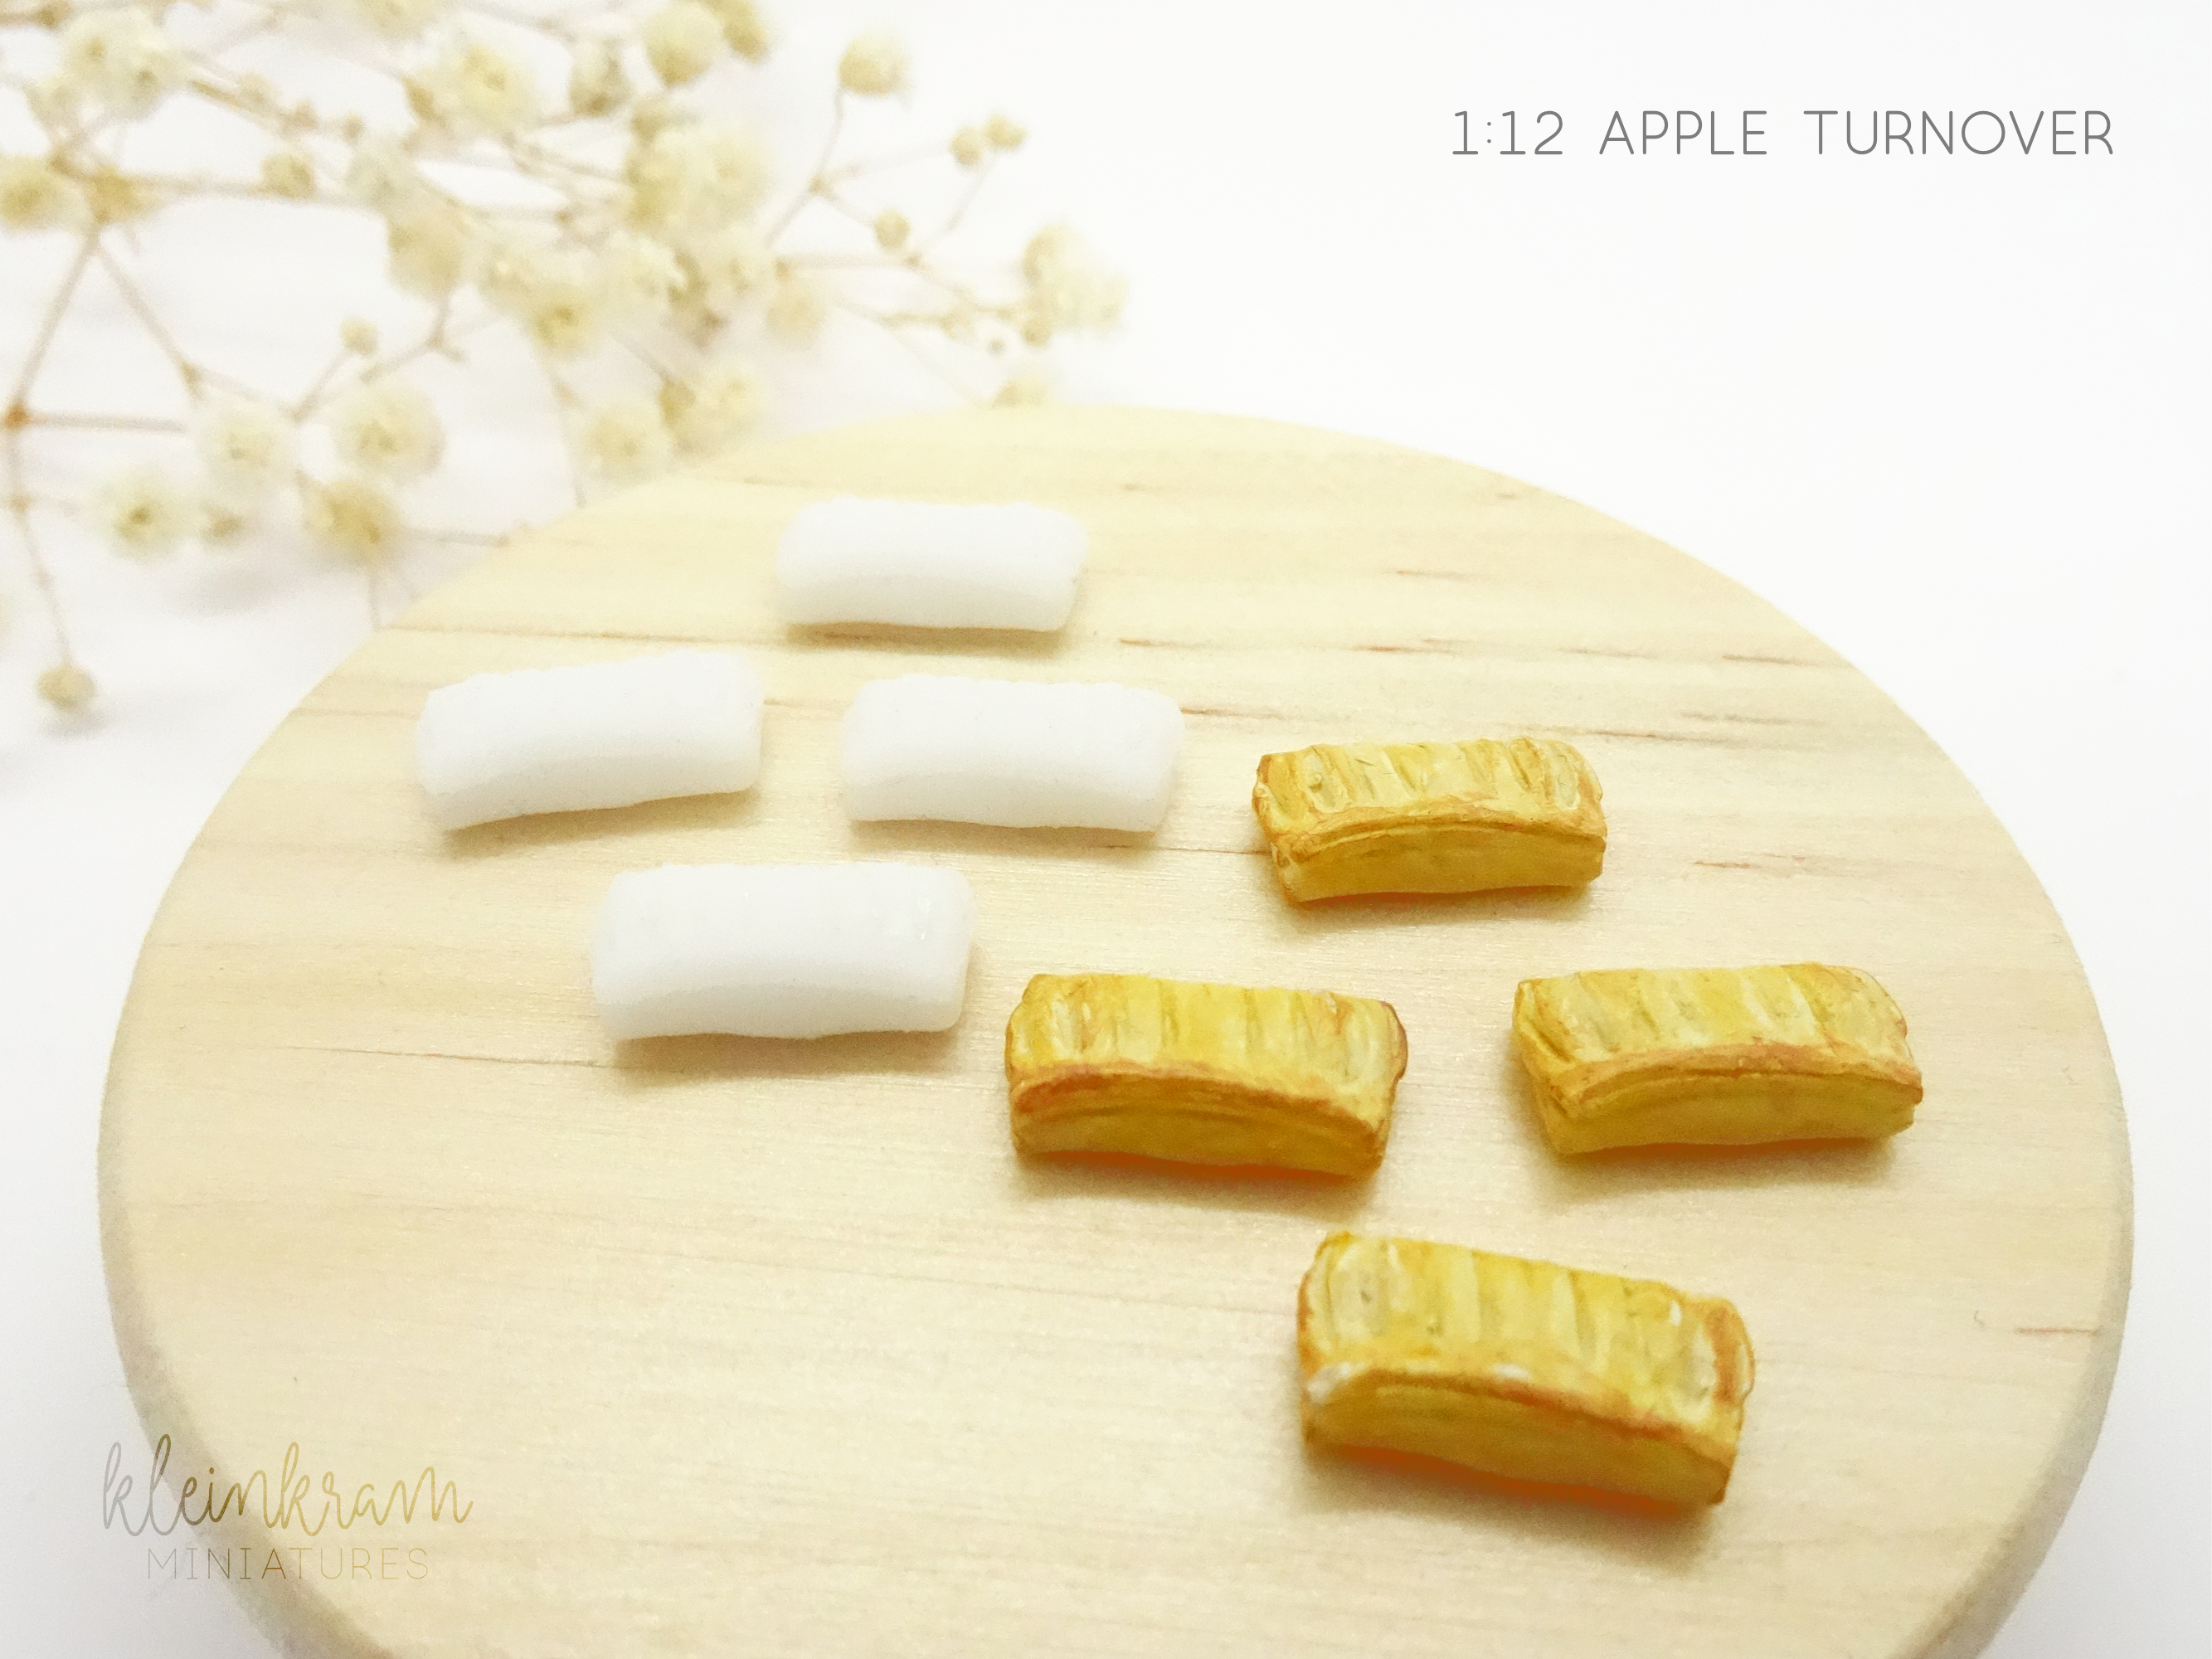 Apfeltasche, Puddingtasche - 4er Set - 1:12 Miniatur